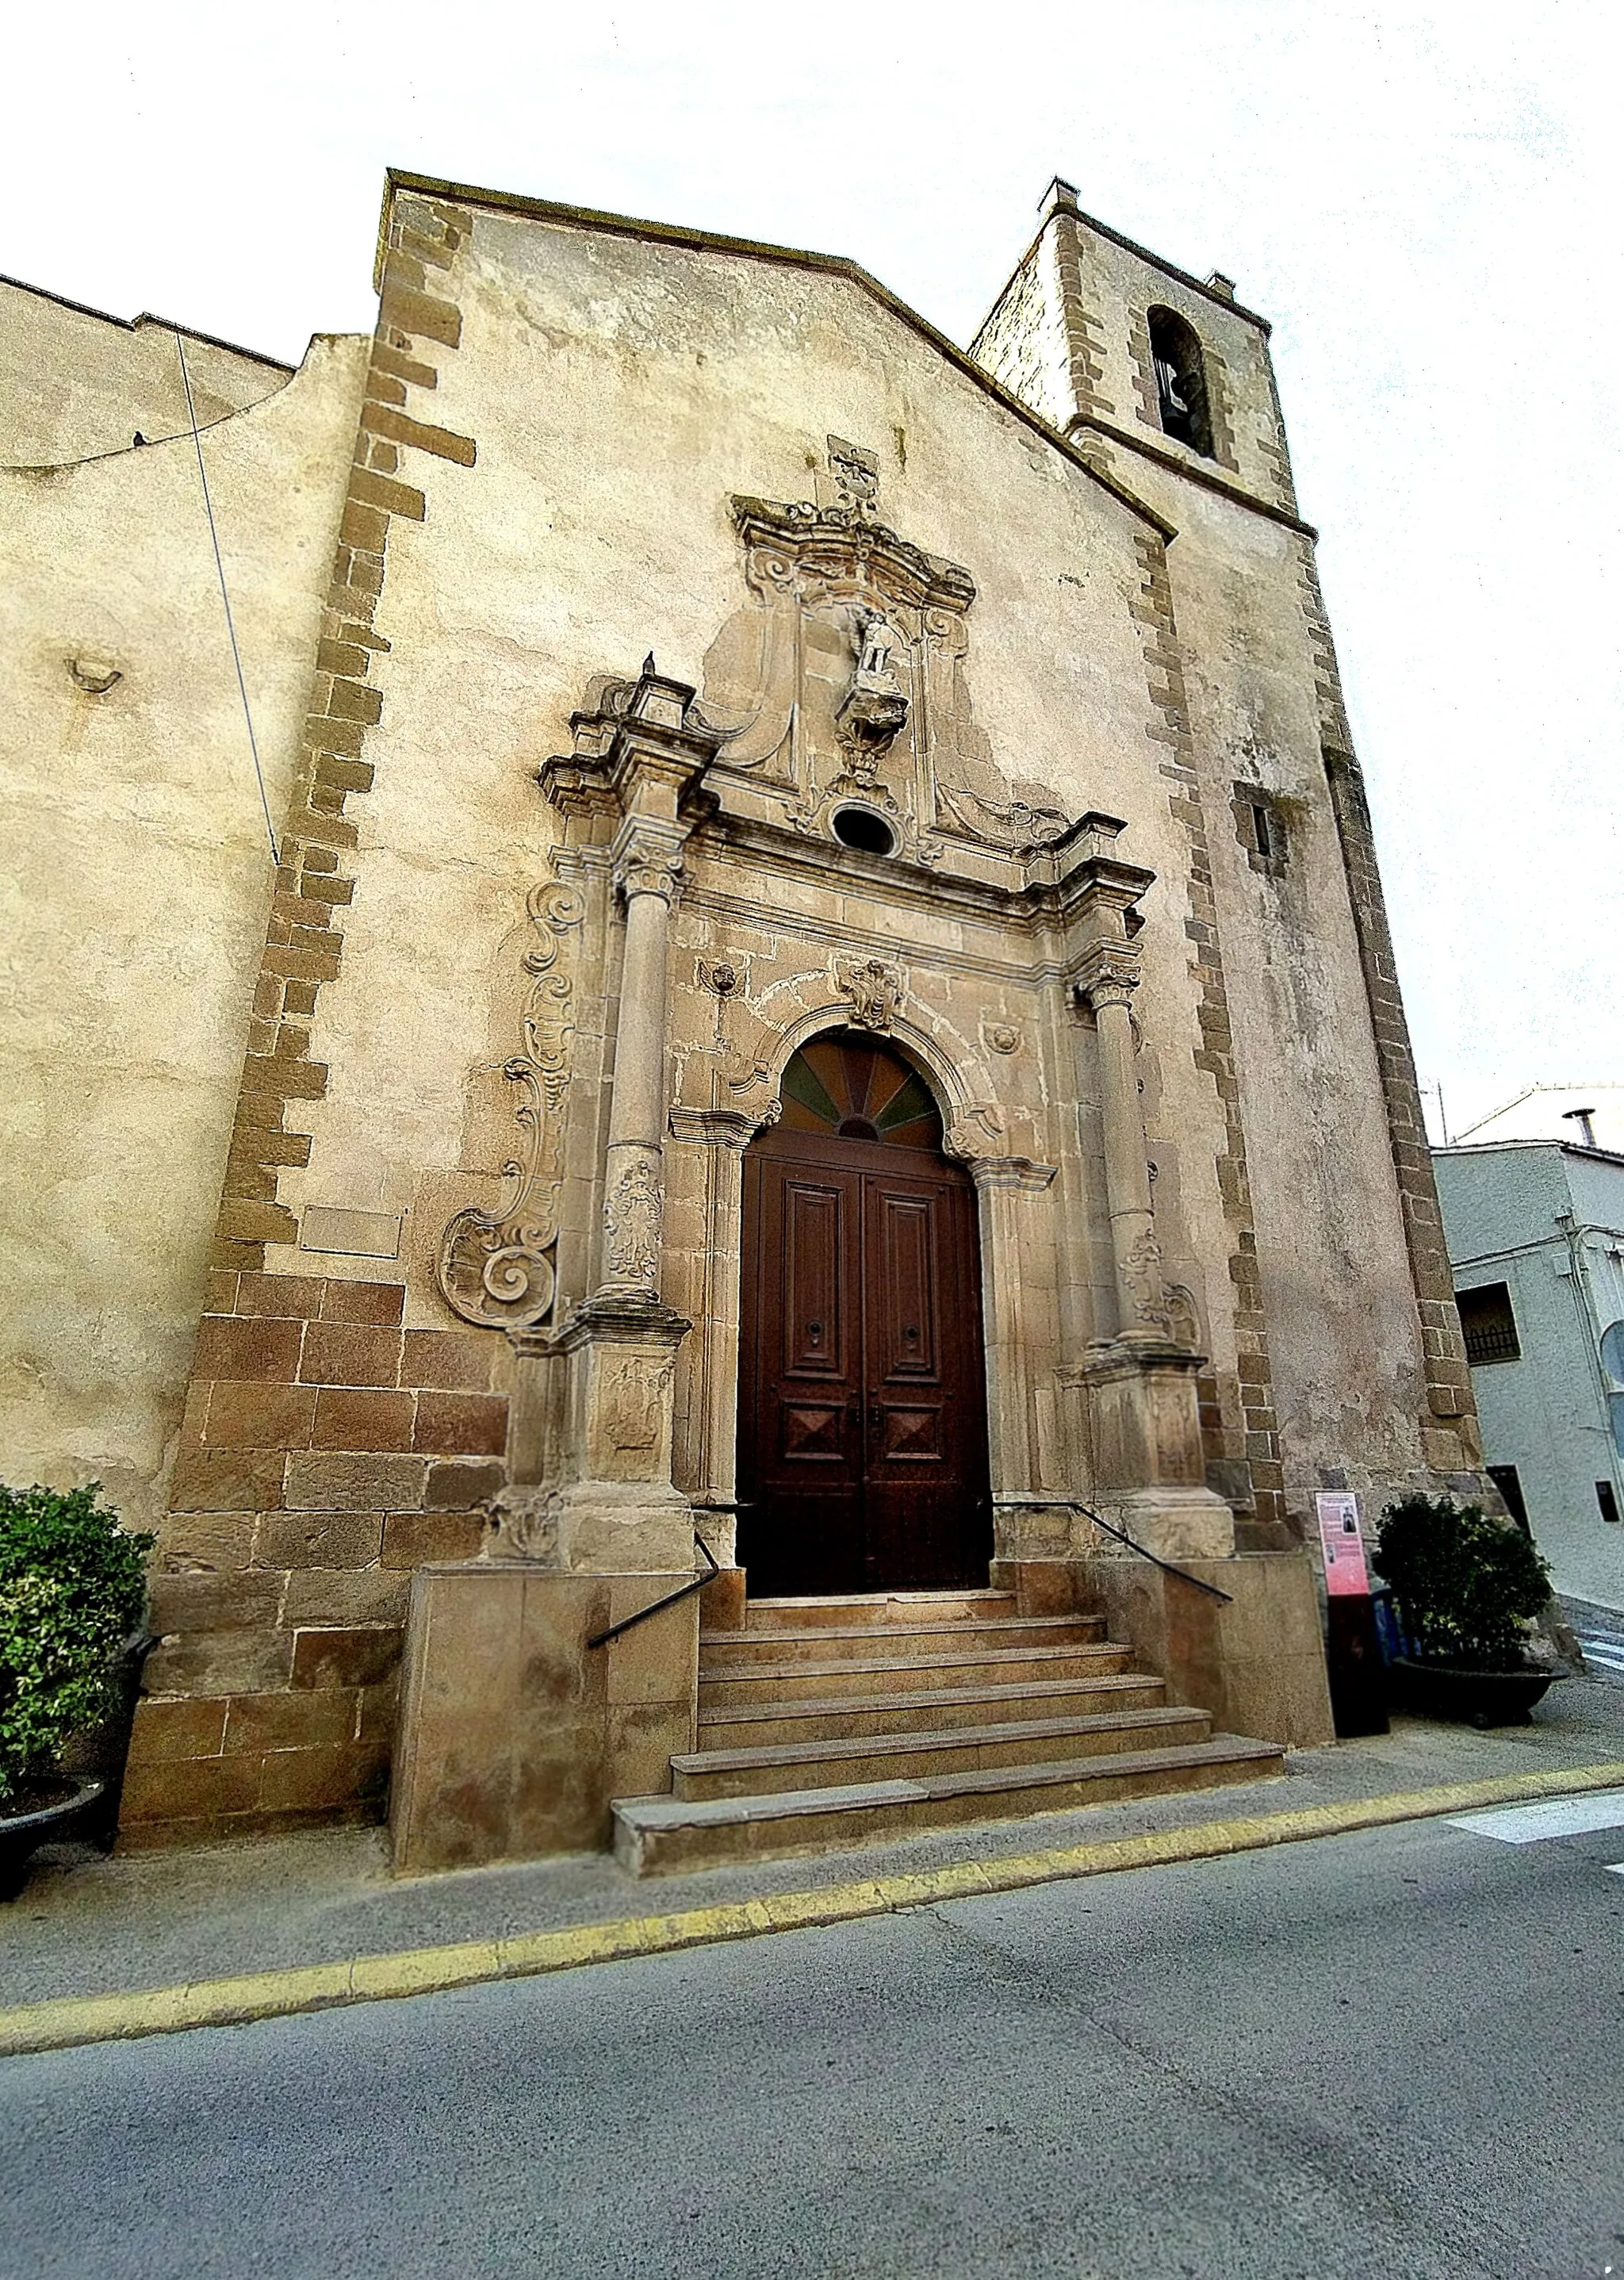 Photo showing: El principal monumento de Alcoletge (Lleida) es la iglesia de San Miguel de Arcángel, una construcción de estilo barroco clasicista erigida a mediados del siglo XVIII.